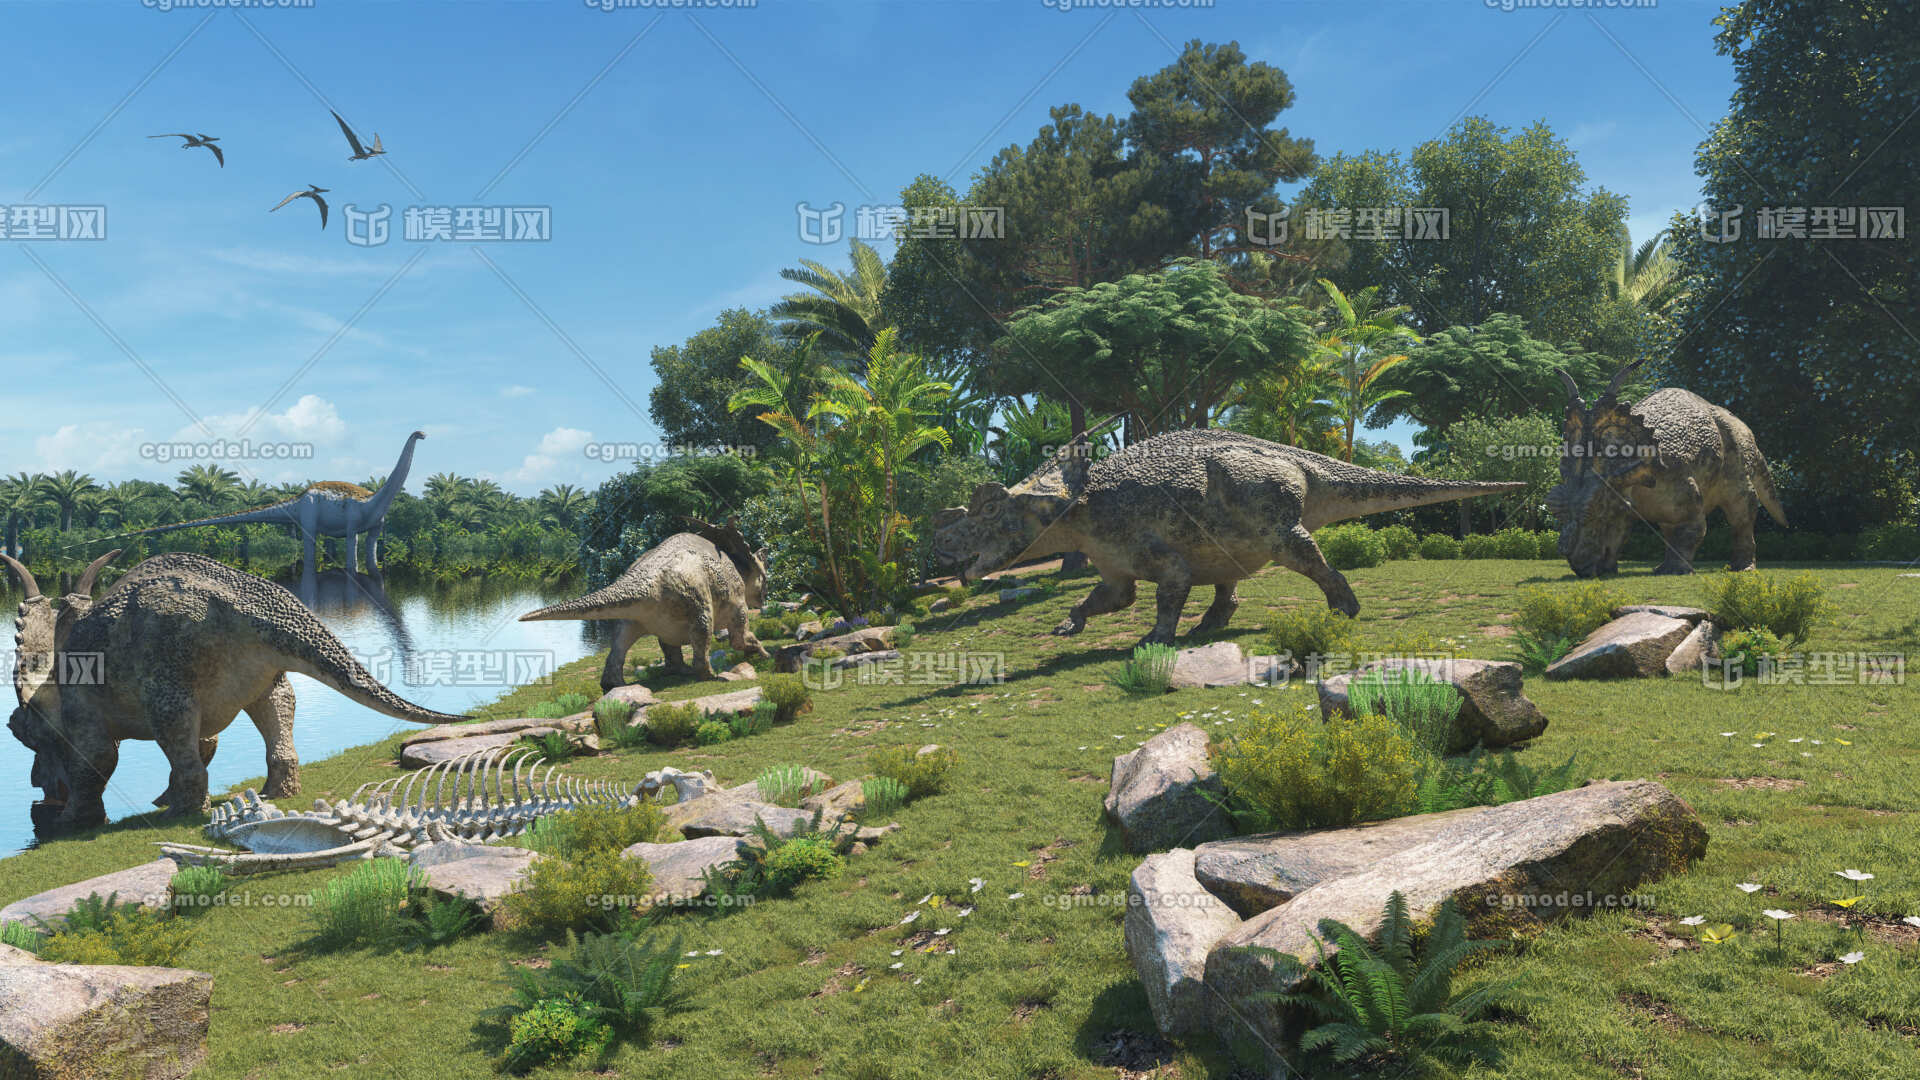 侏罗纪场景 白垩纪 三叠纪 侏罗纪公园 恐龙场景 恐龙世界 河边森林